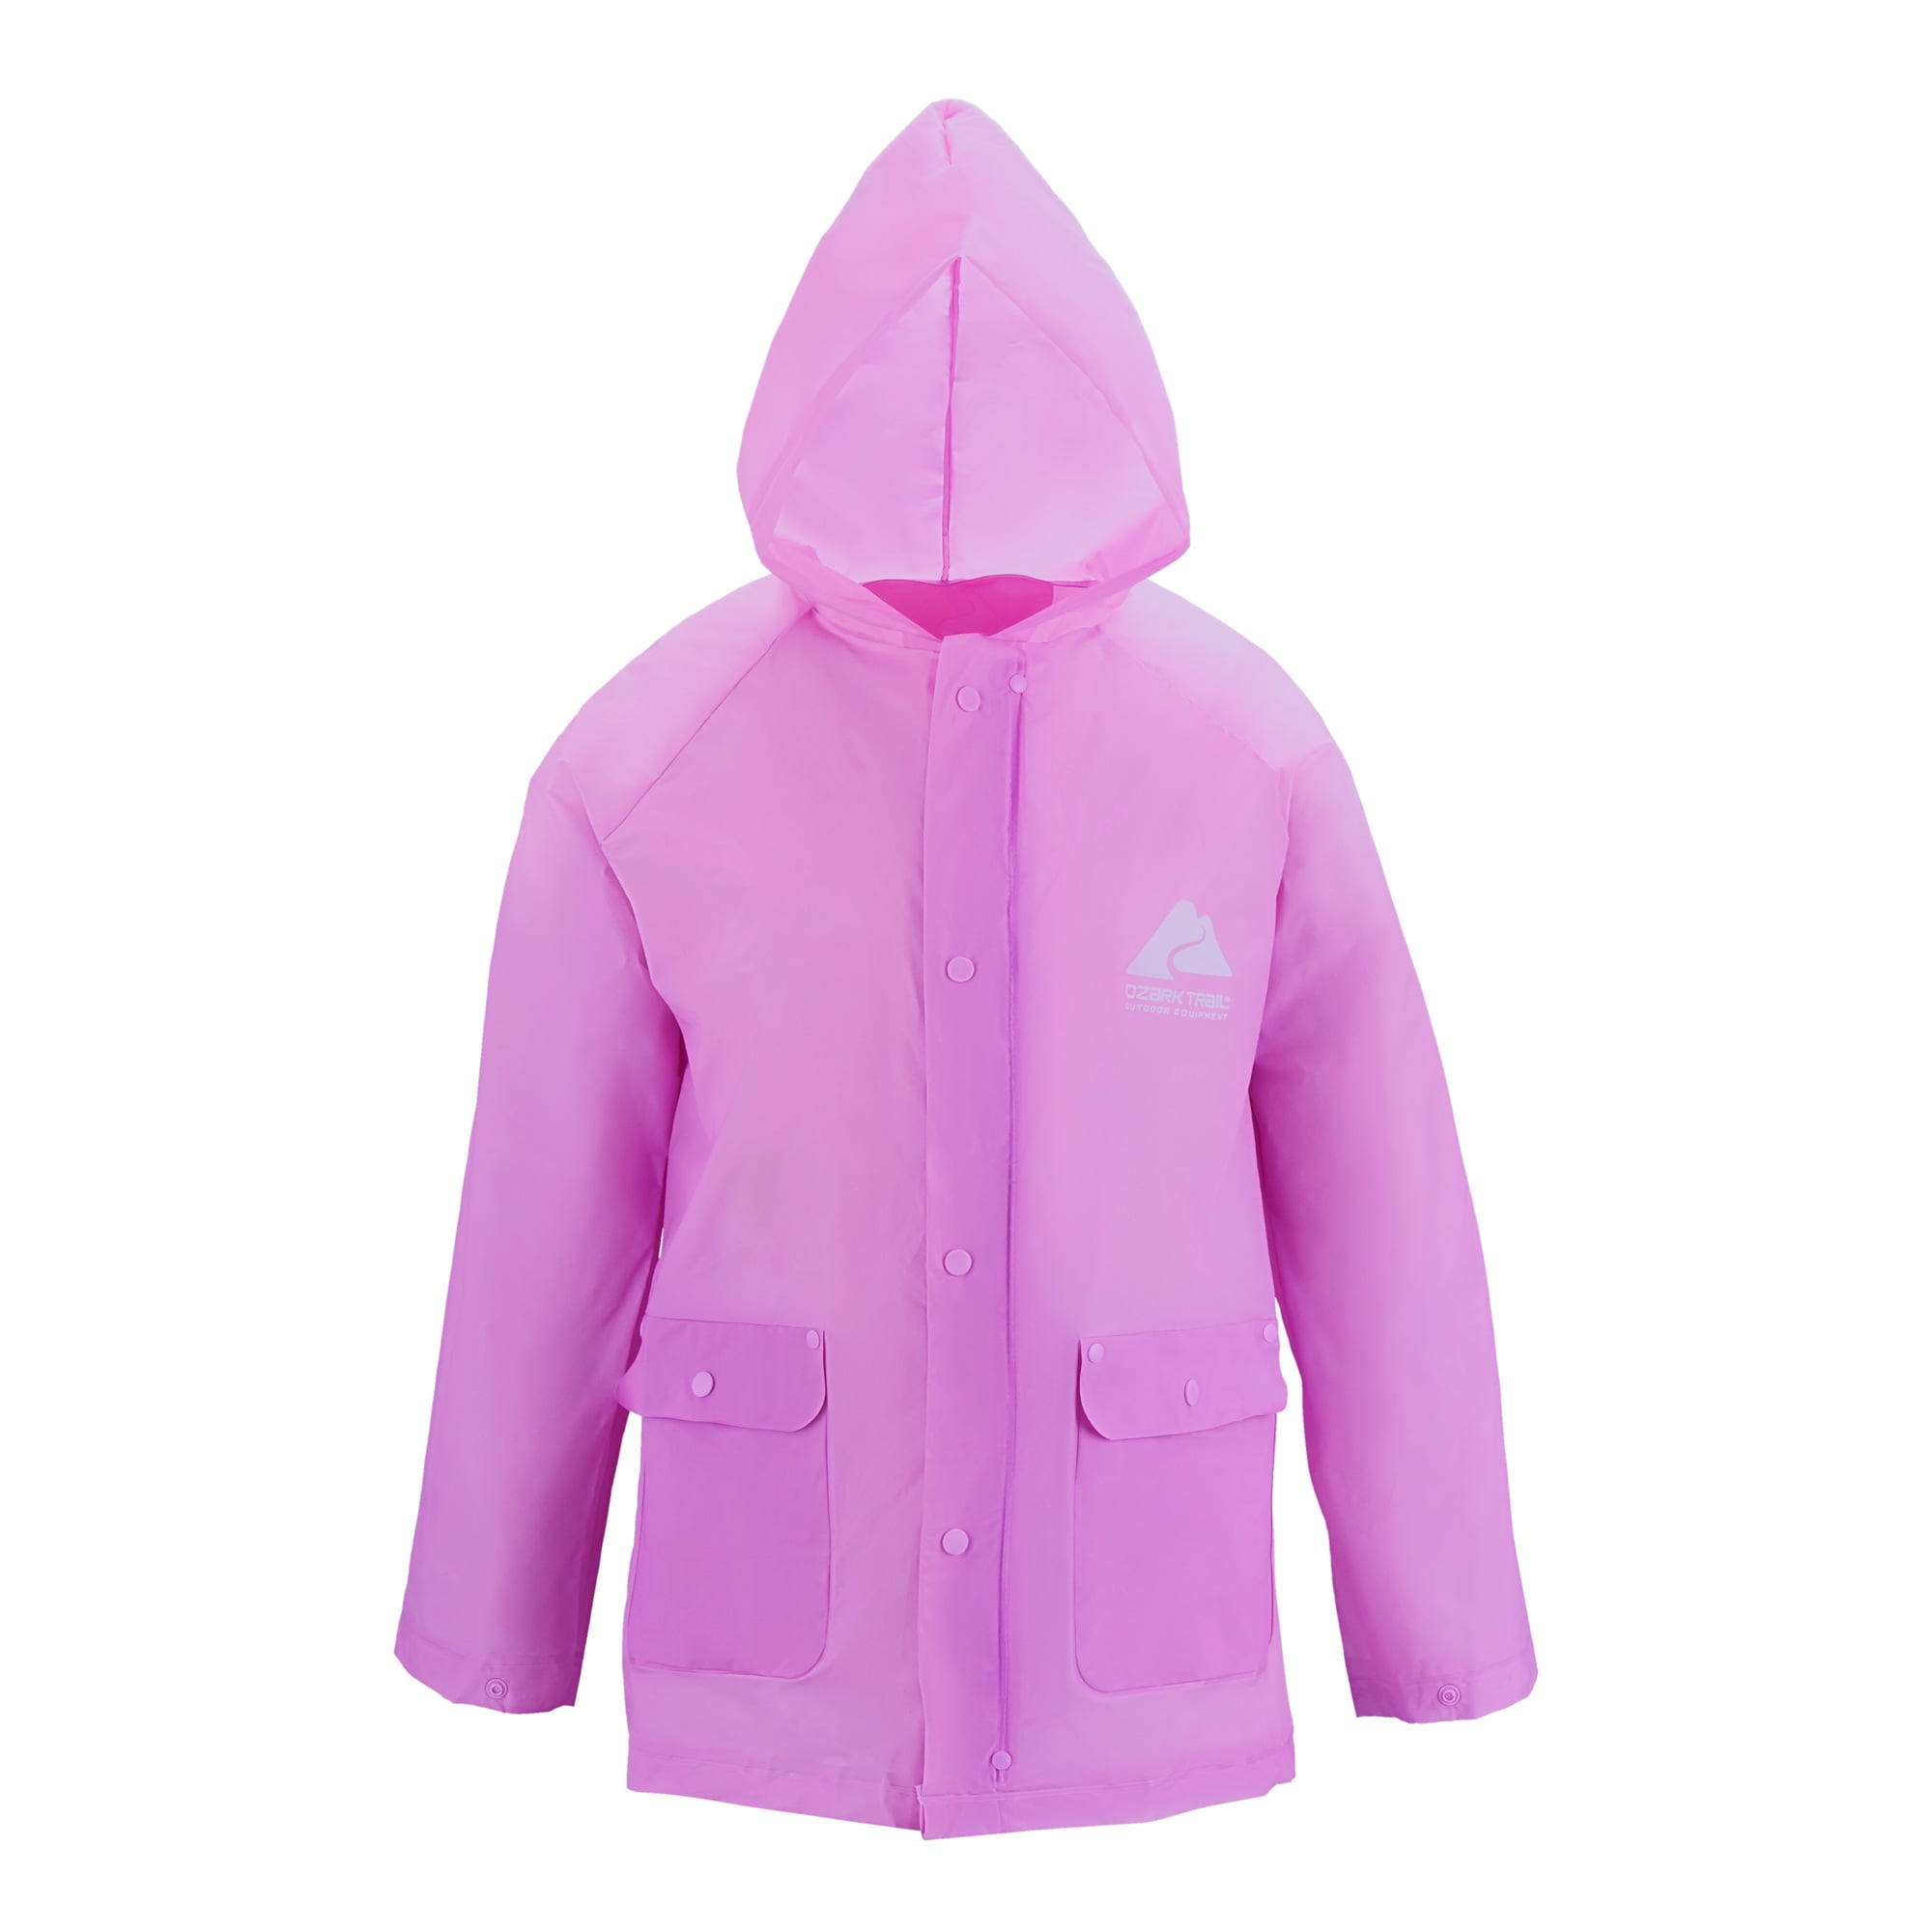 Ozark Trail Child Eva Purple Lightweight Large/XL, Rainwear Jacket